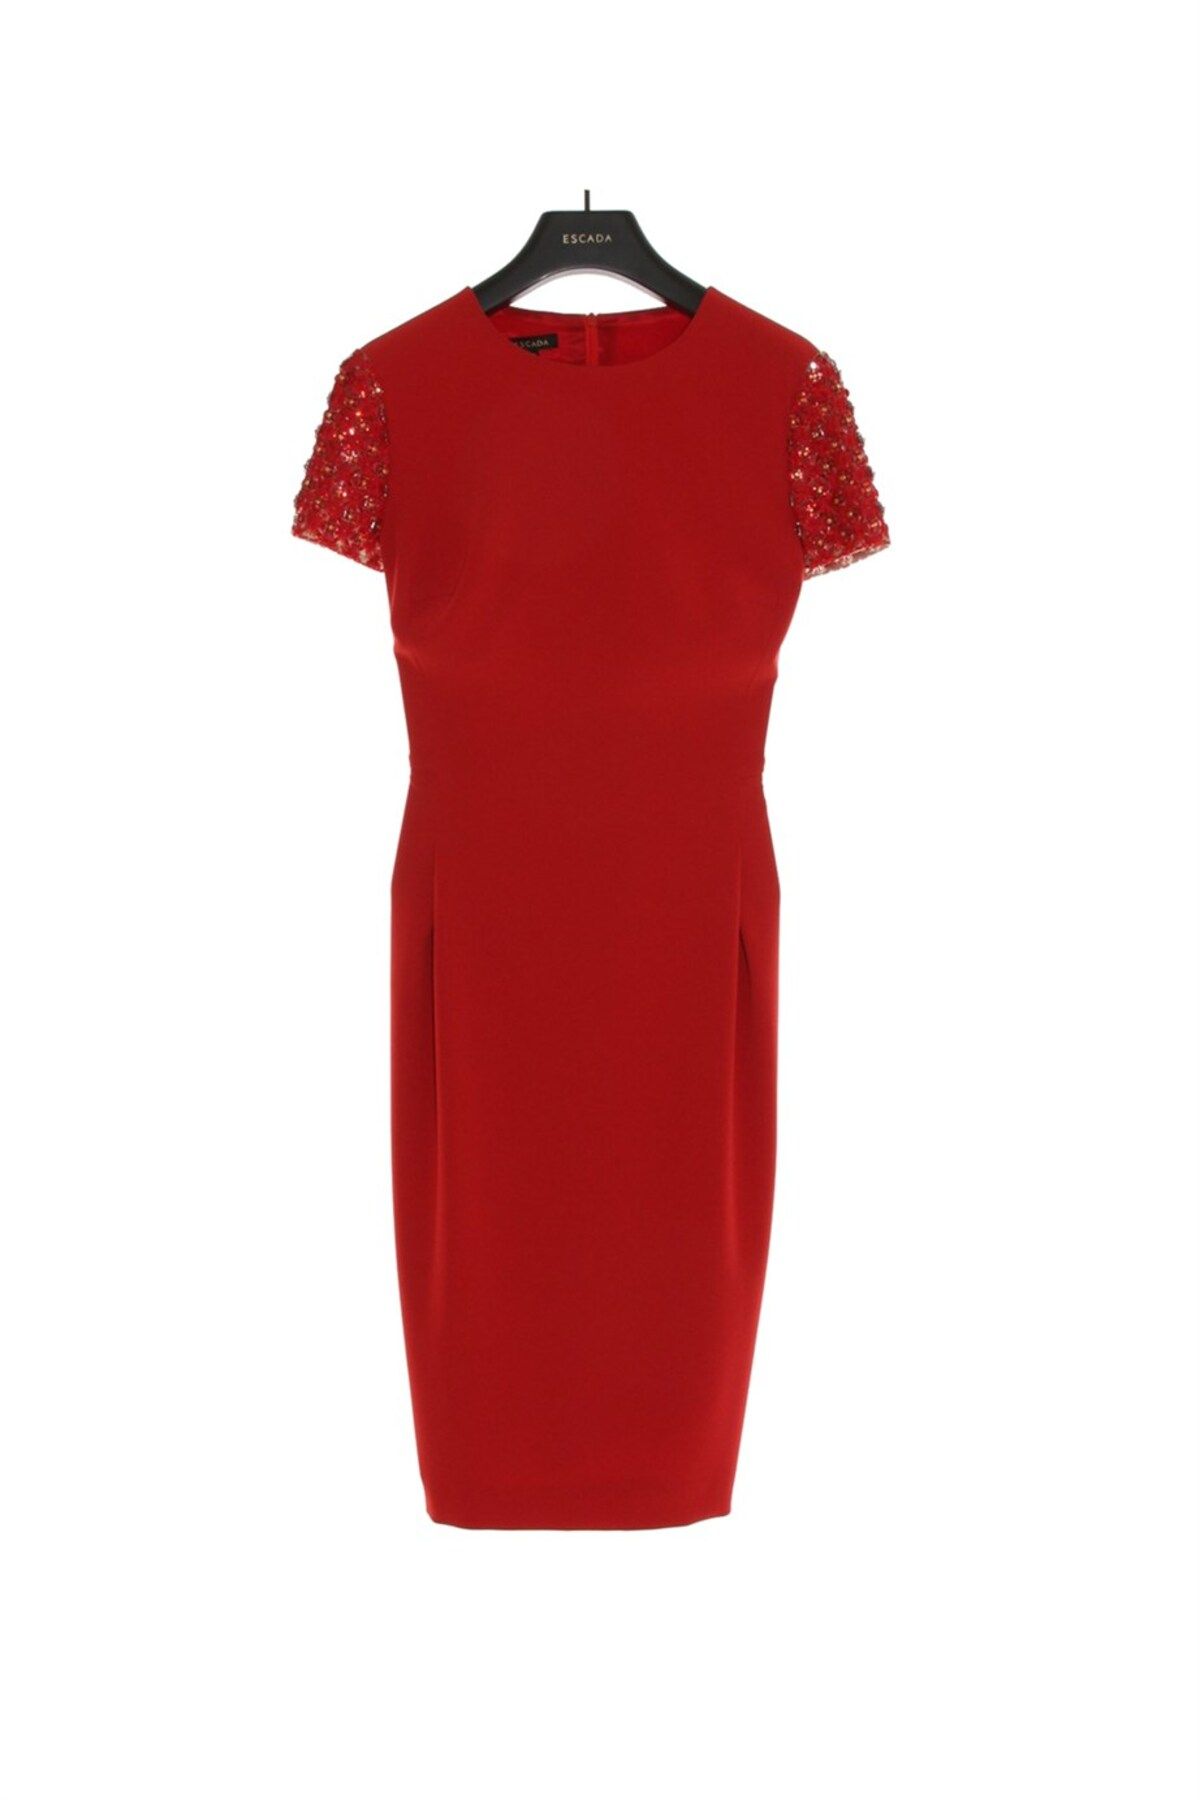 Escada Kol Işlemeli Pile Detaylı Fermuarlı Klasik Kırmızı Kalem Elbise